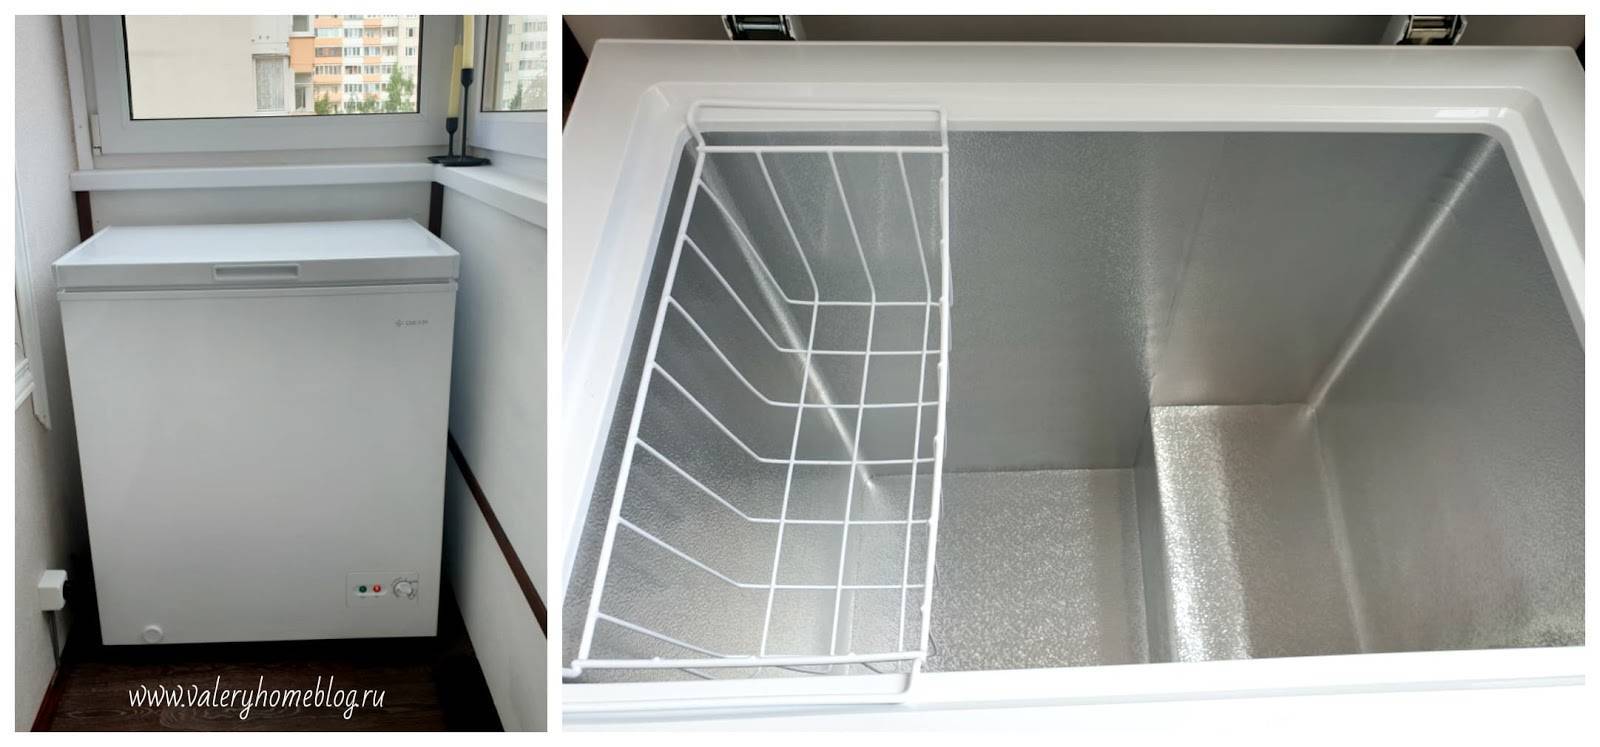 Можно ли хранить холодильник на морозе - правила эксплуатации при минусовых температурах